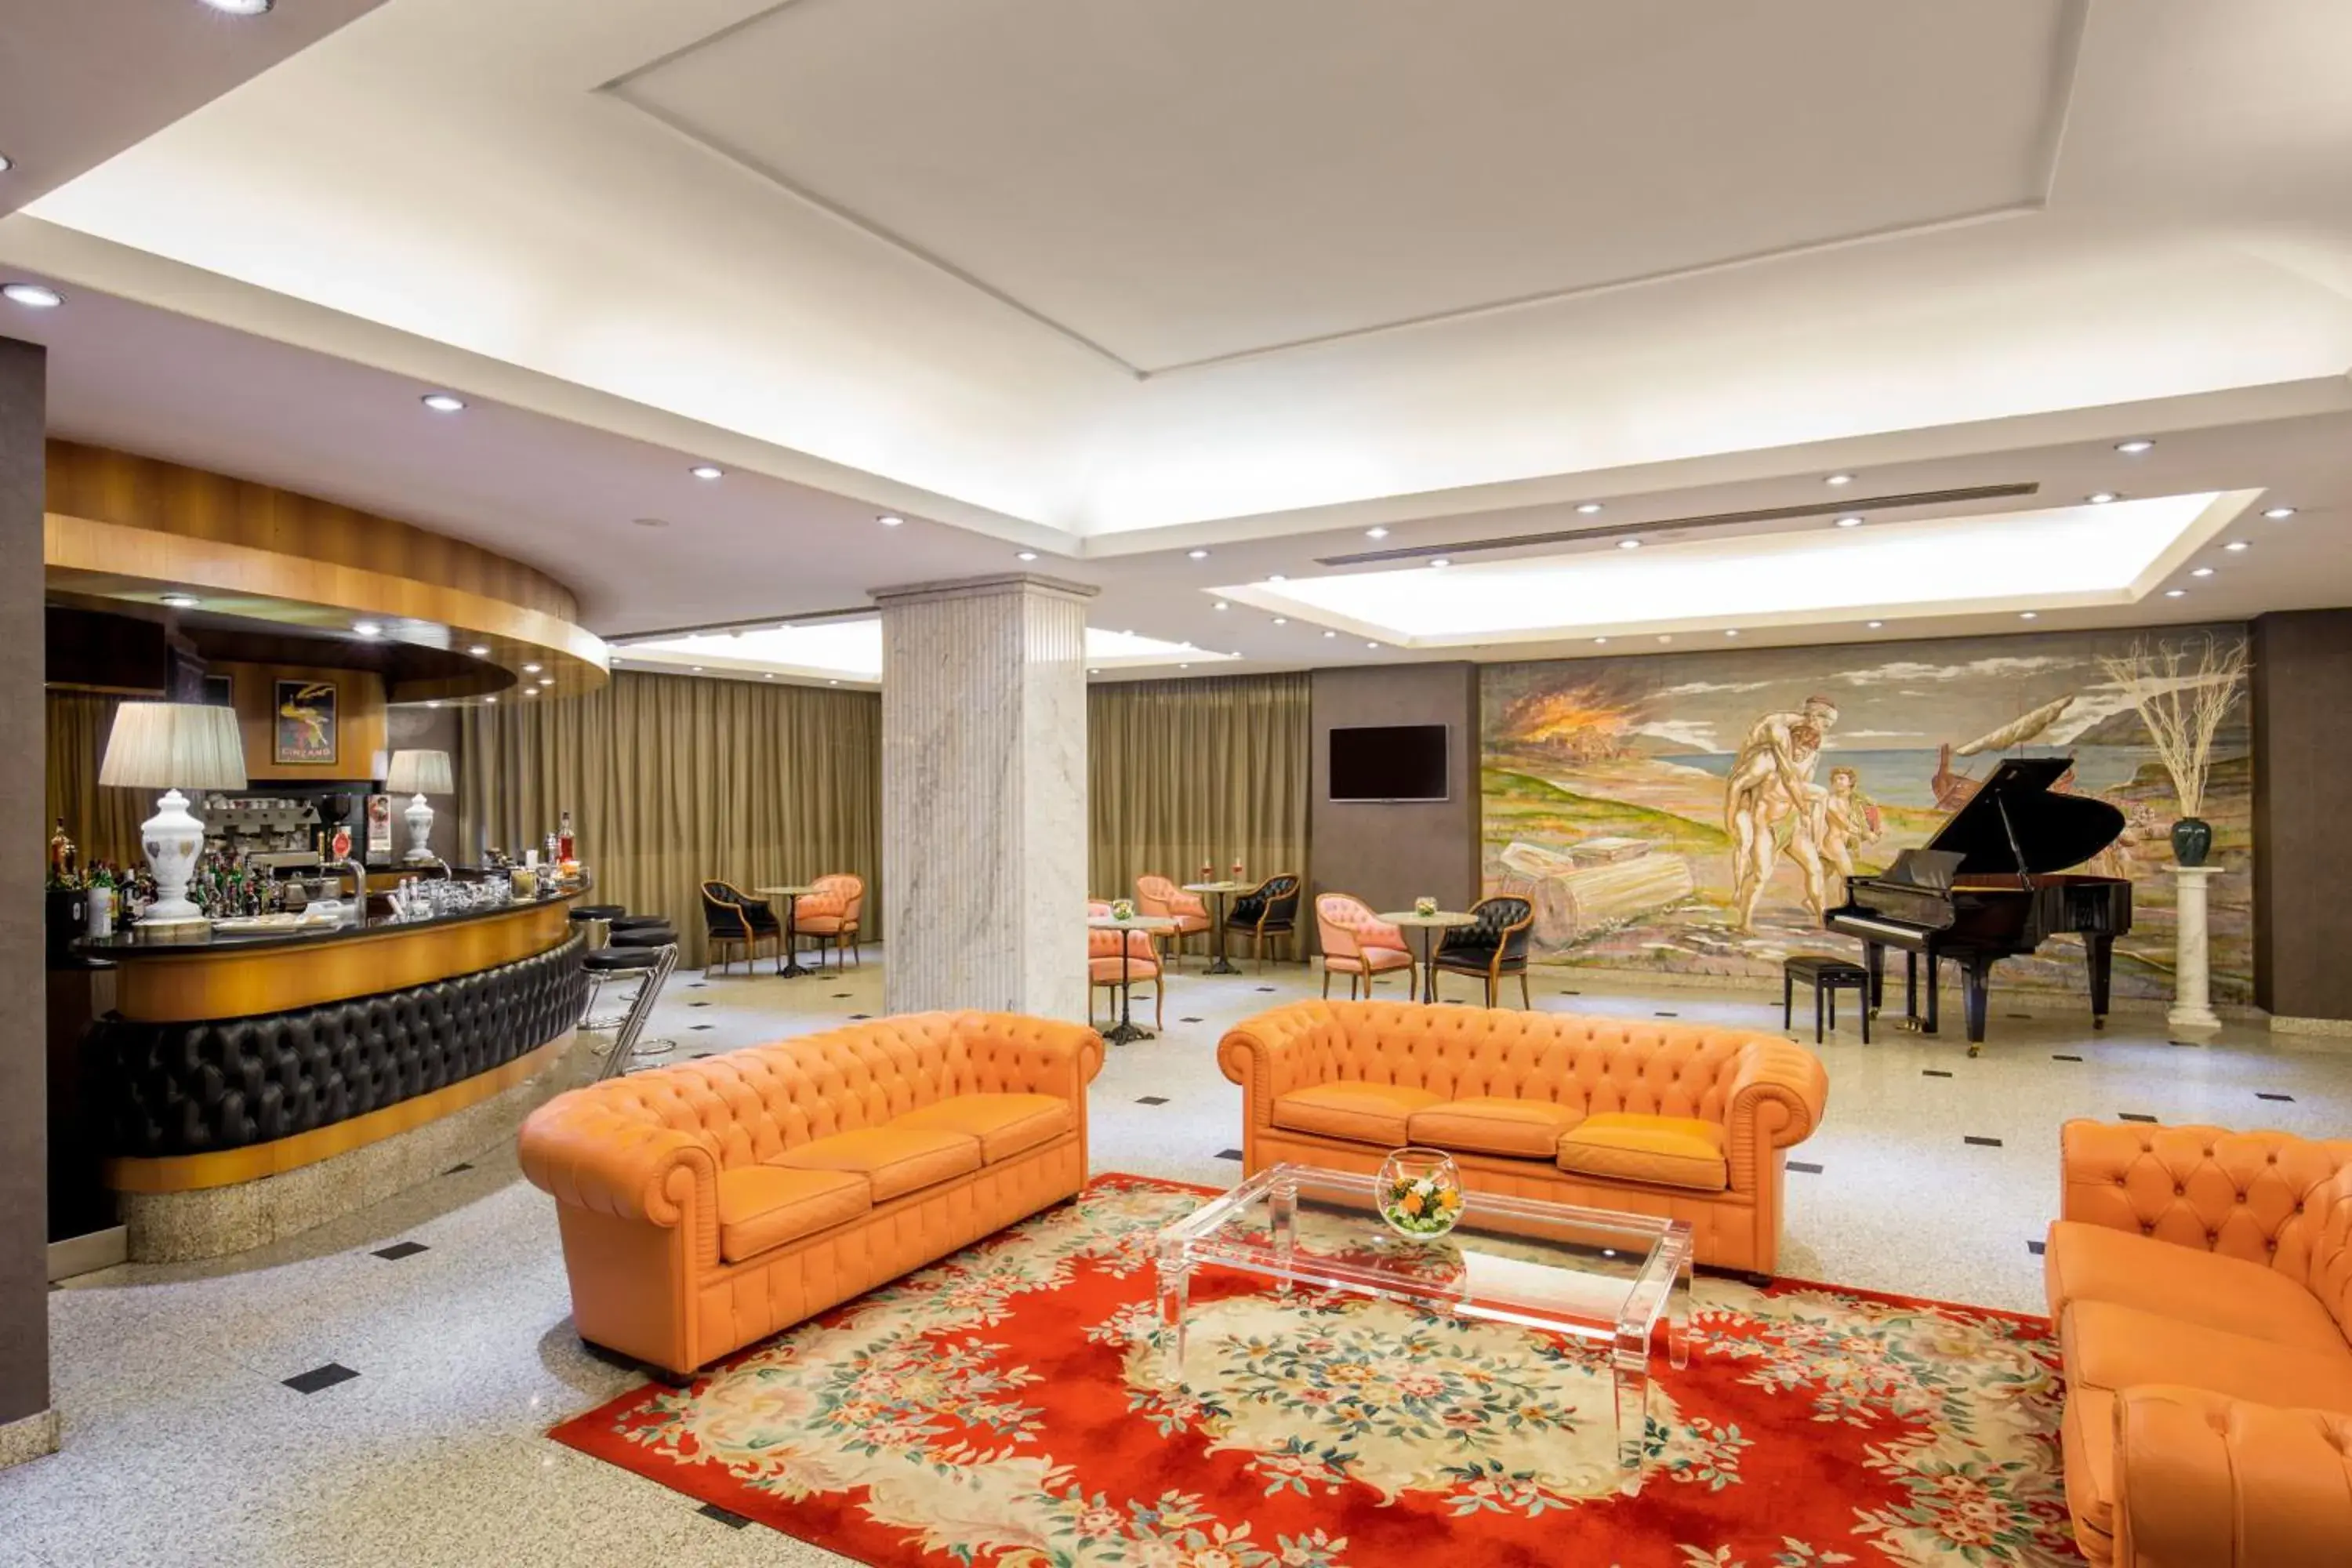 Lounge or bar, Lobby/Reception in Enea